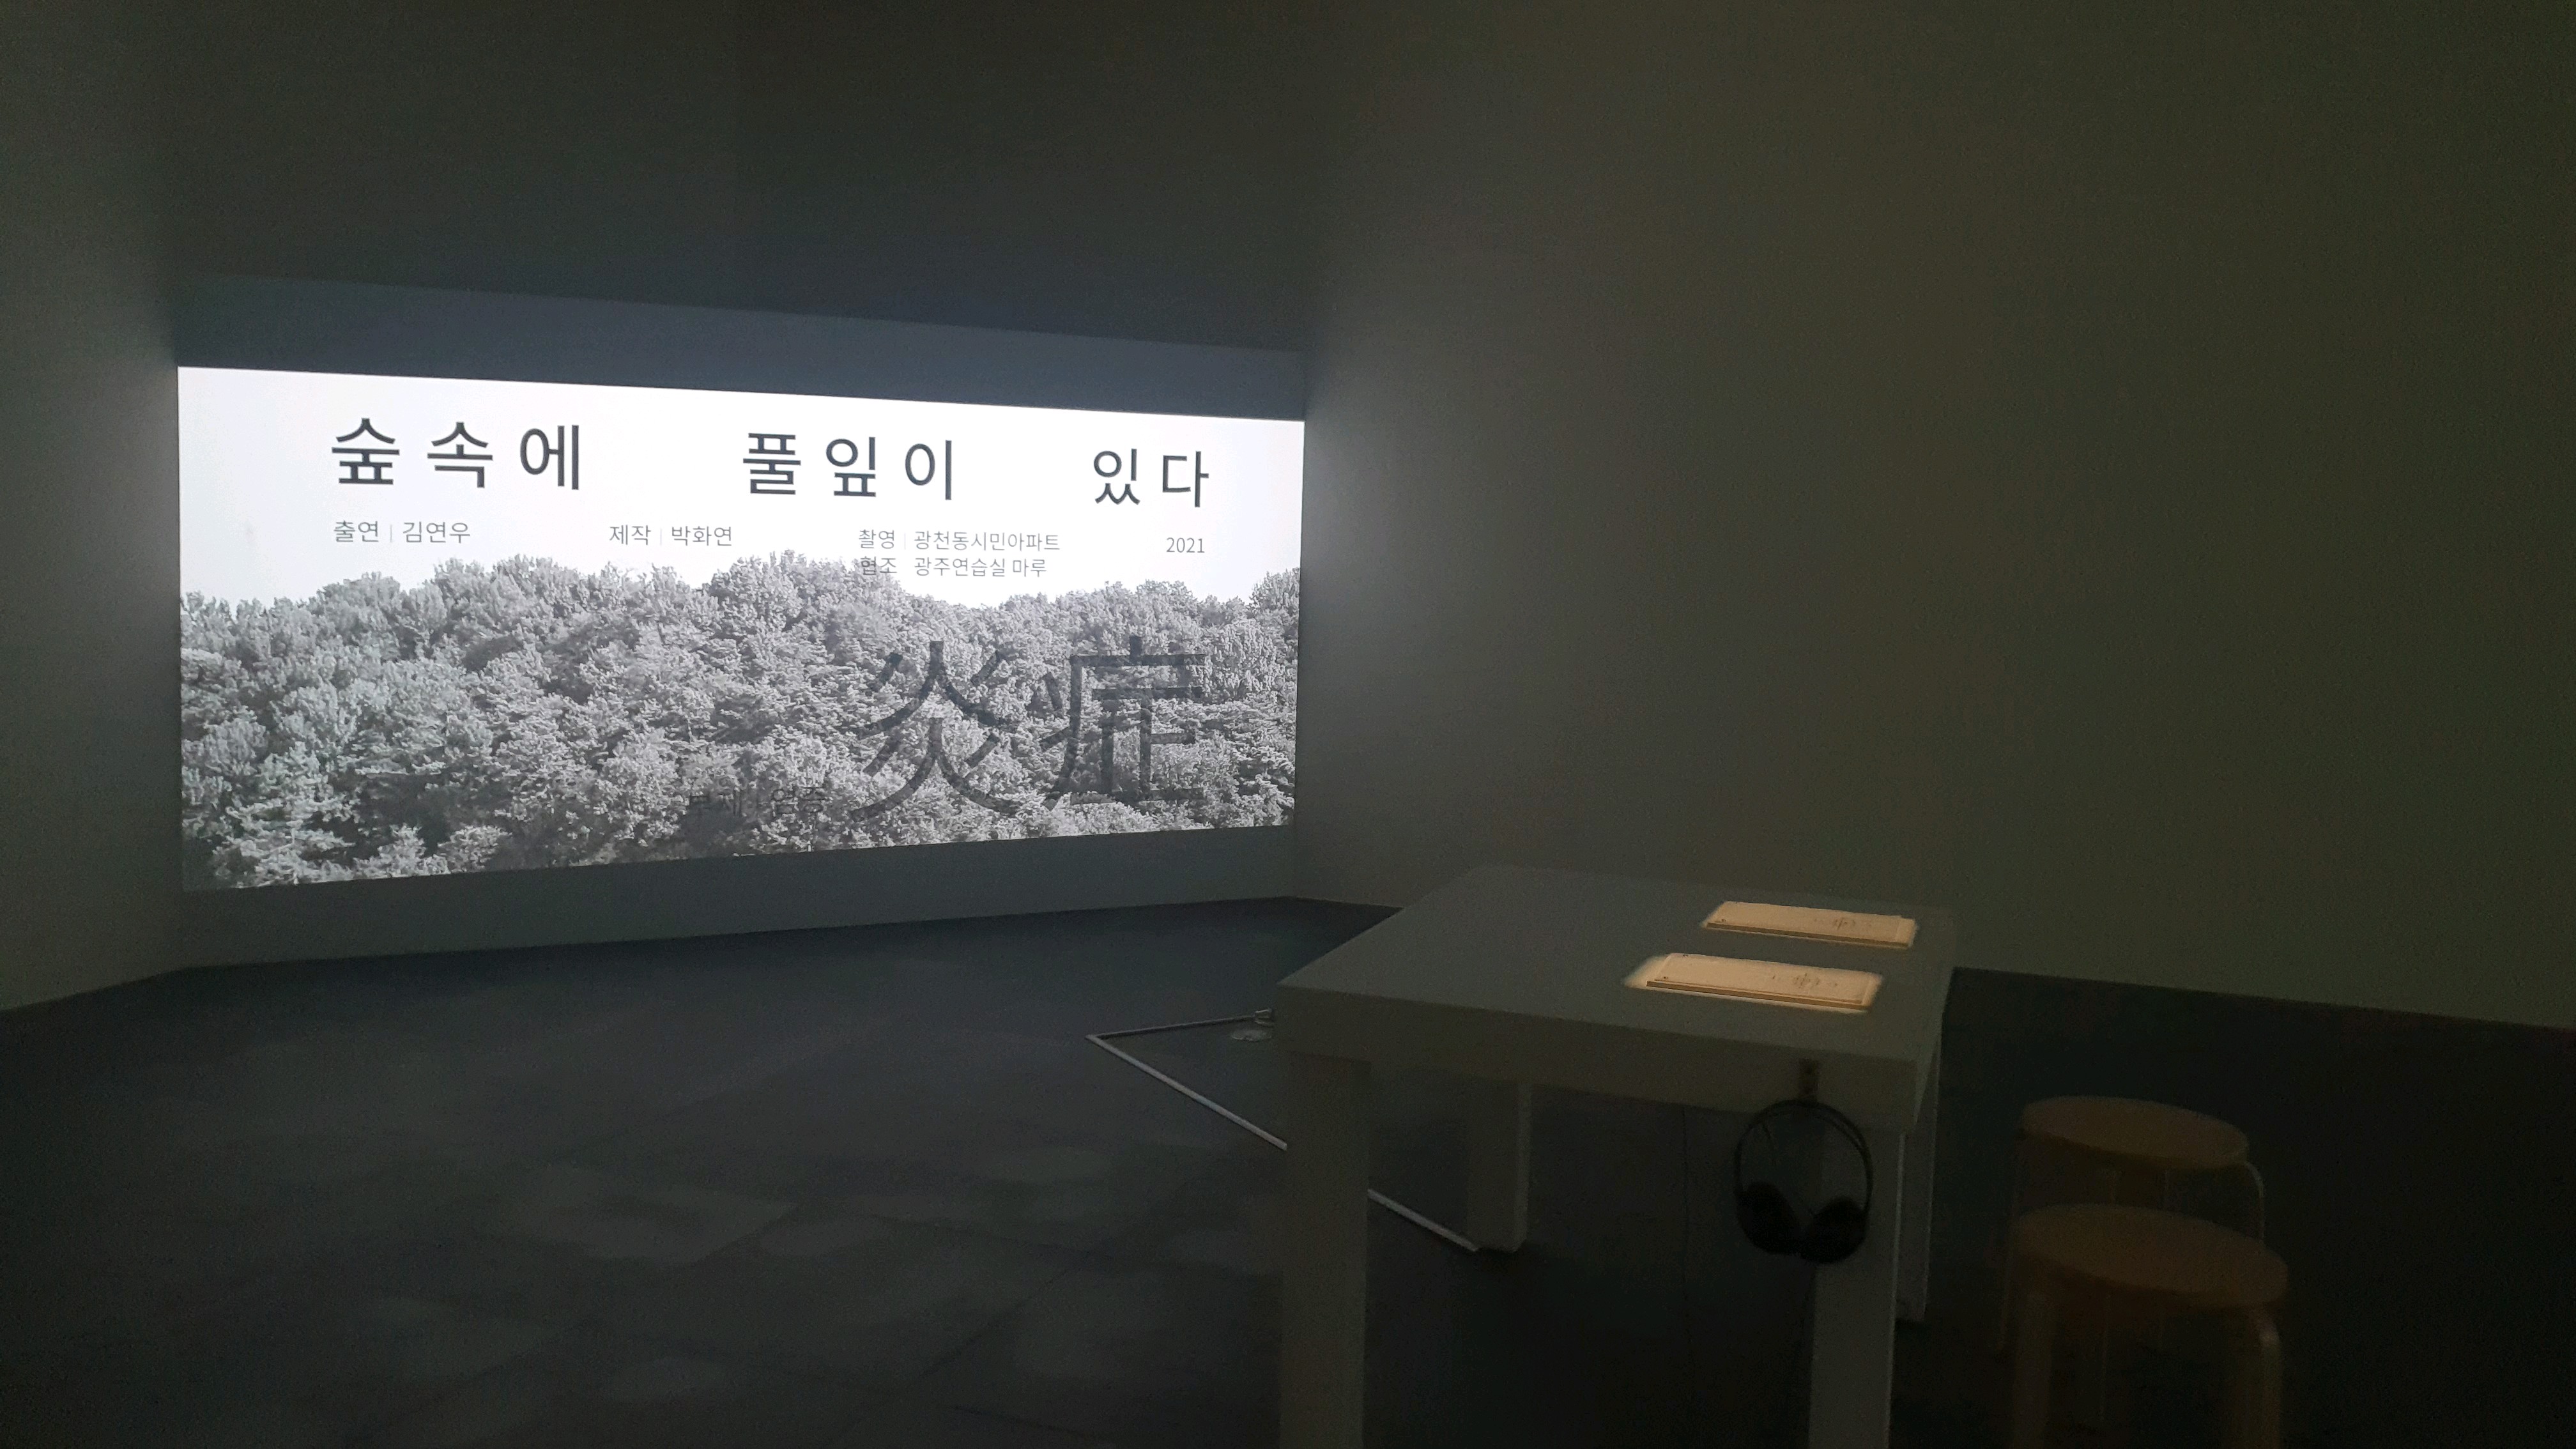 < 박은현씨가 기획한 전시 ‘기억의 파편과 그물들’ 의 전시 모습 - 출처: 통신원 촬영 >